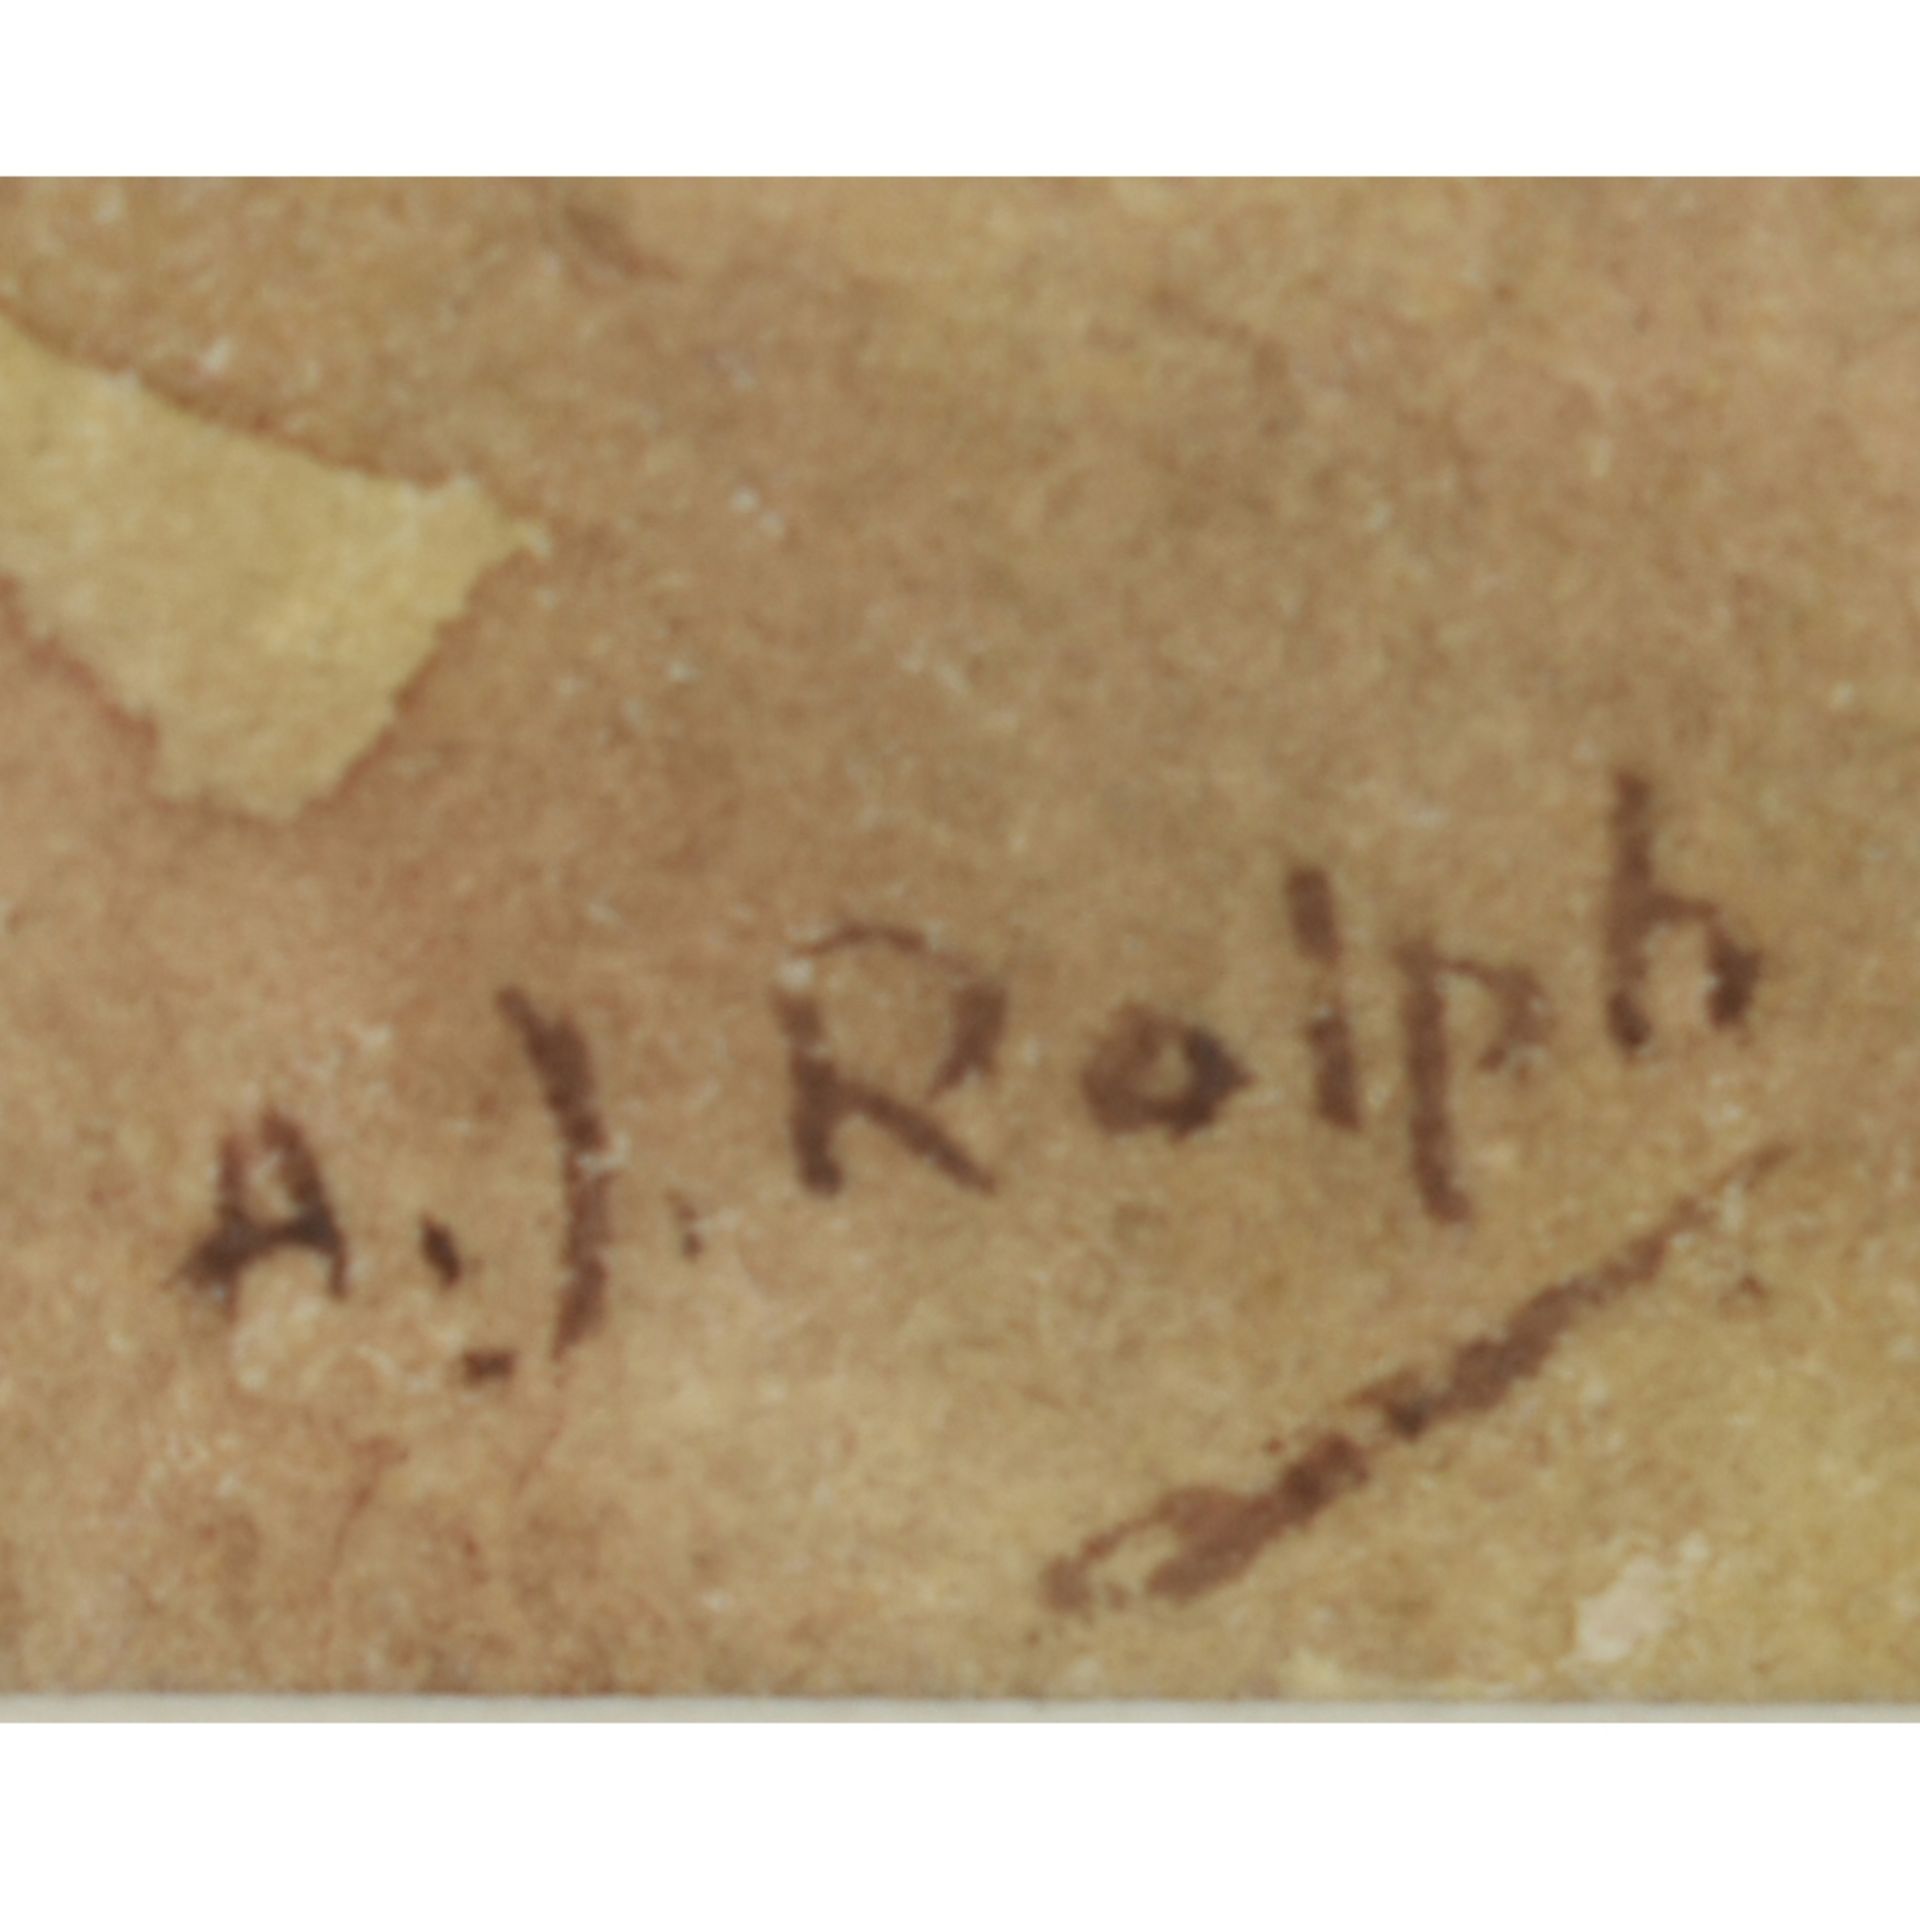 Rolph, A.J. (Großbritannien) - Image 3 of 3